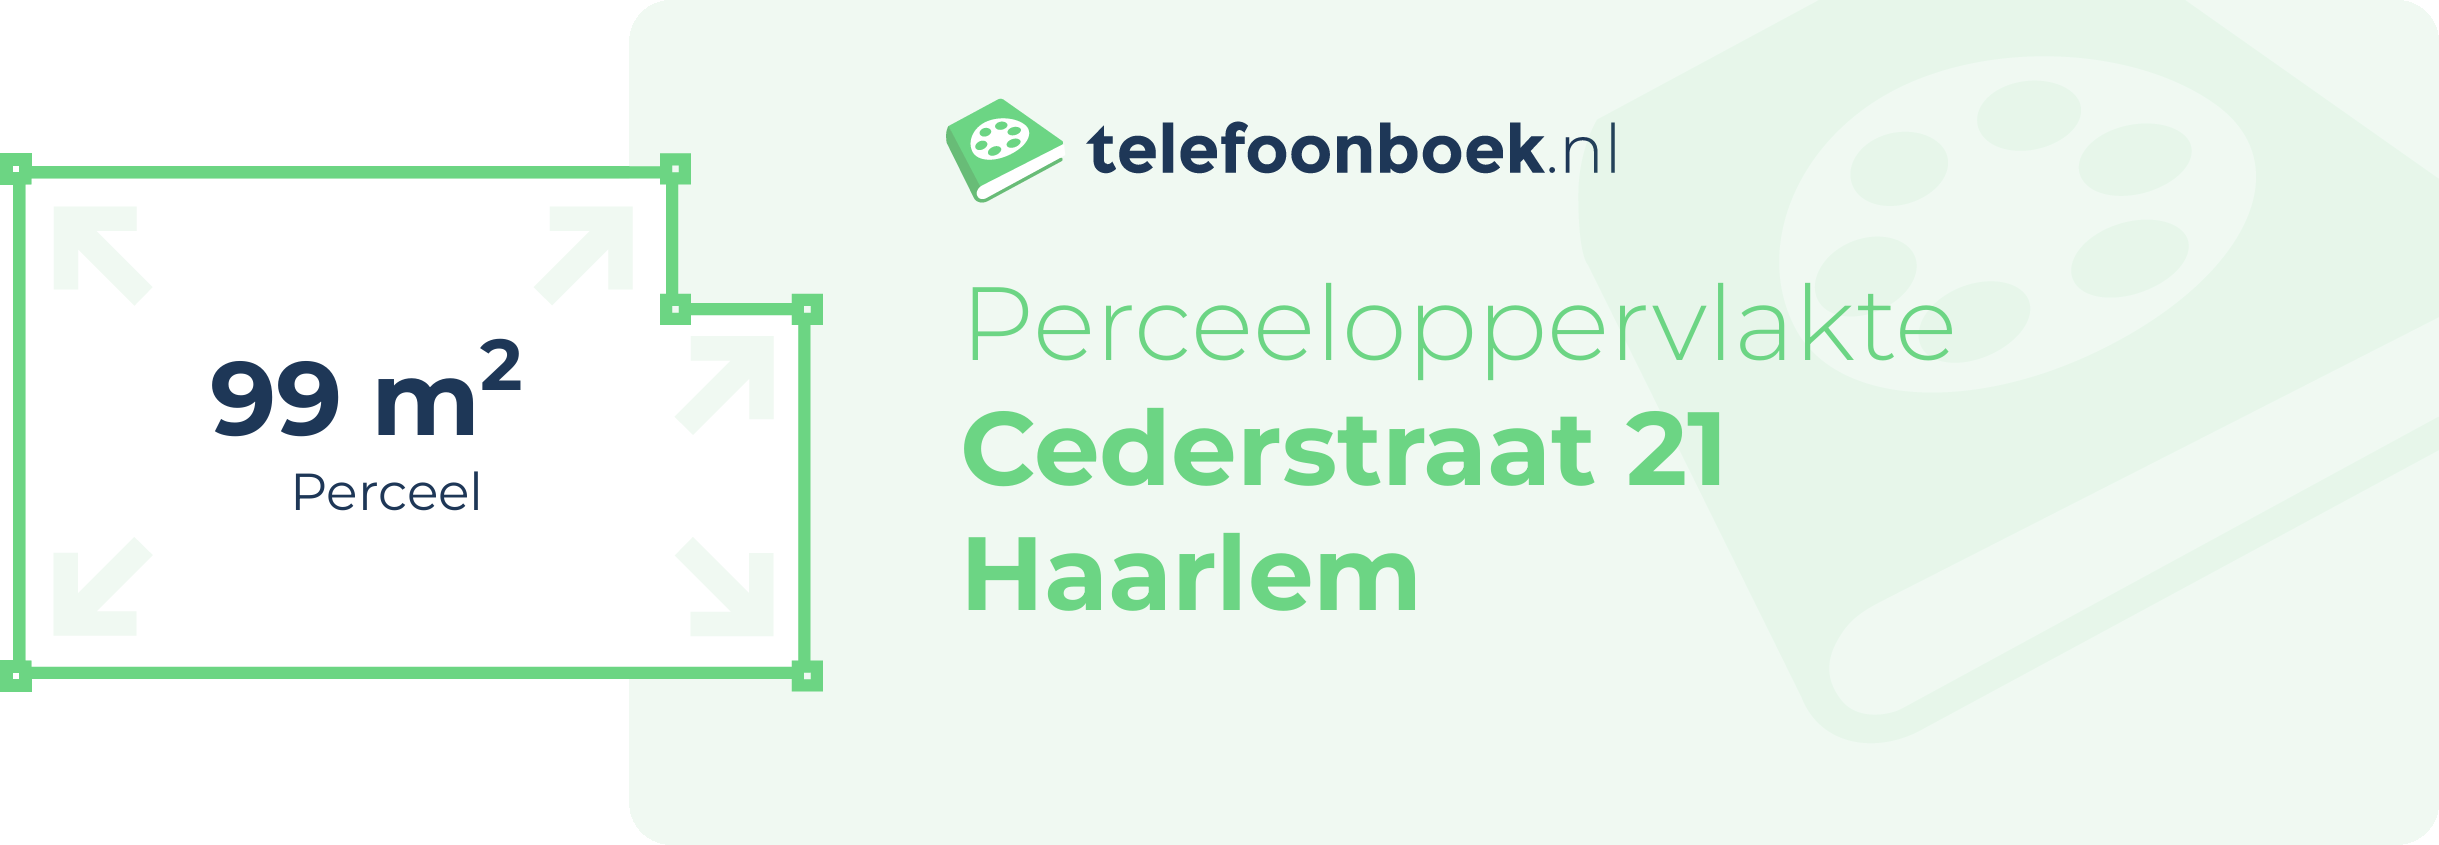 Perceeloppervlakte Cederstraat 21 Haarlem